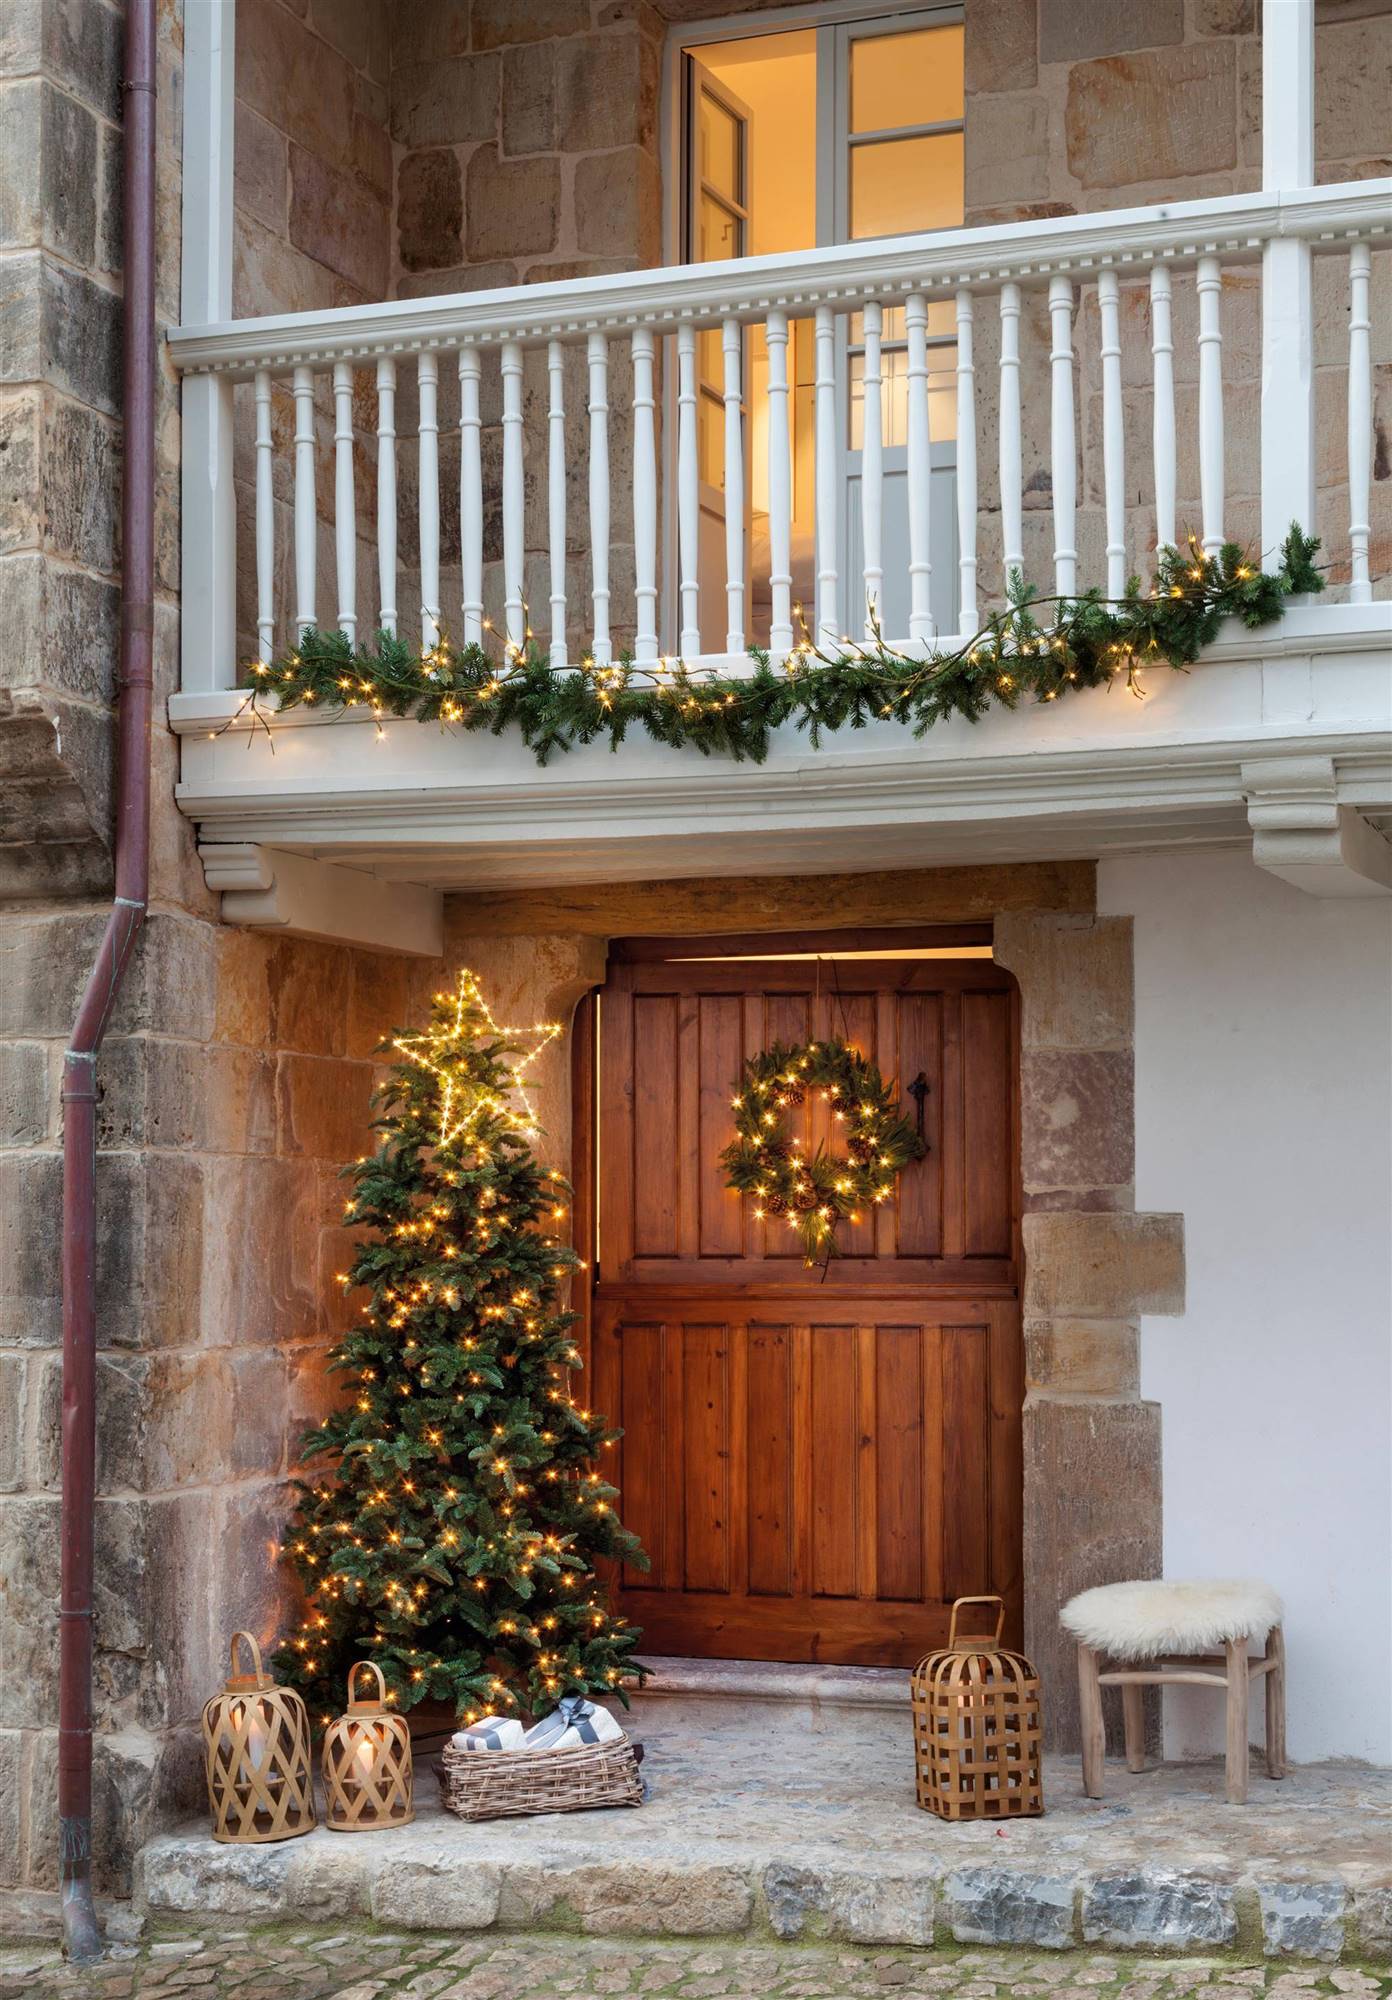 Puerta de entrada de madera con árbol de Navidad iluminado y corona navideña.